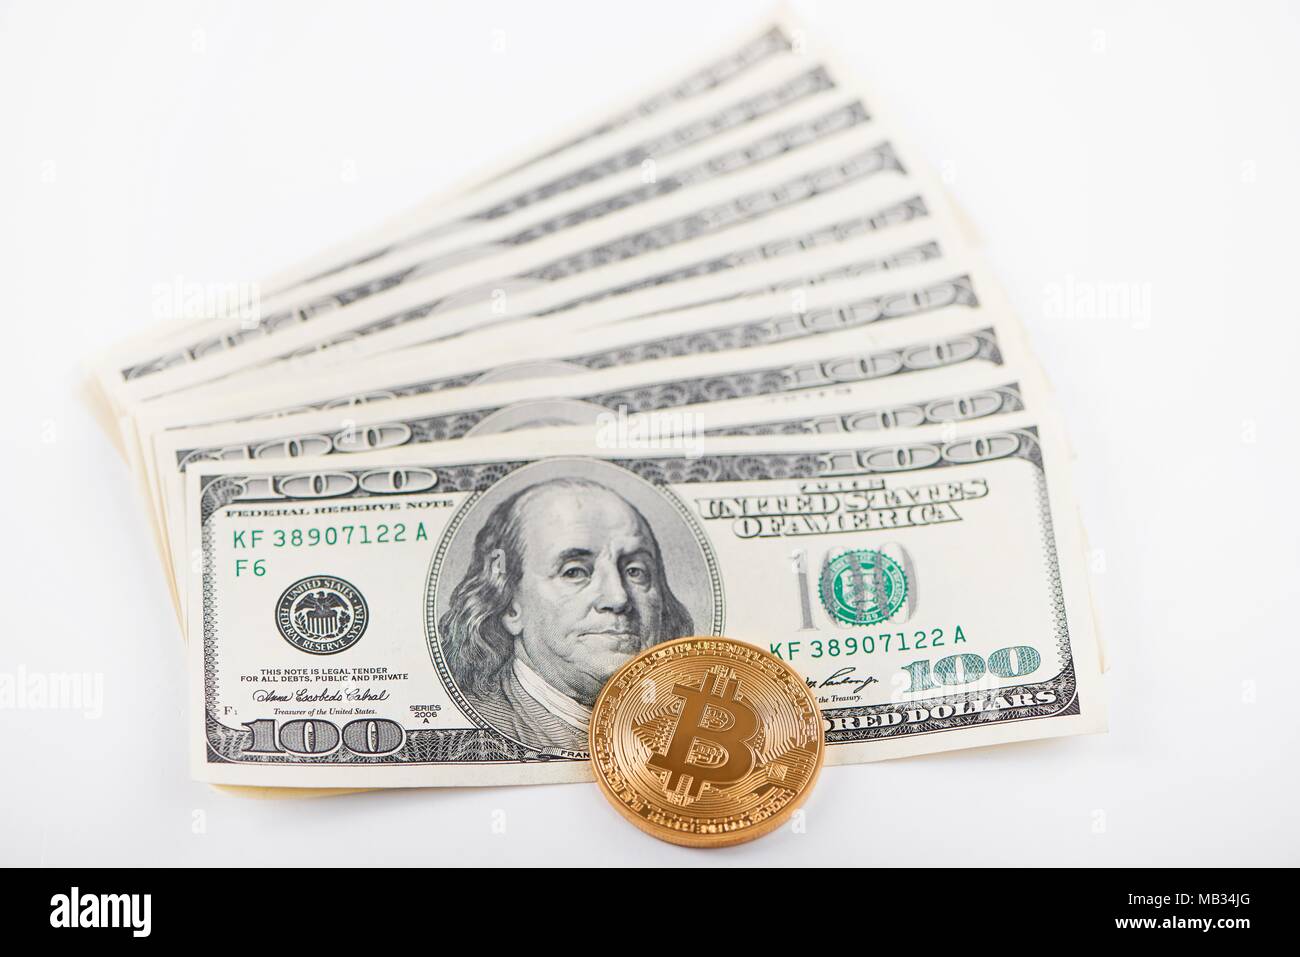 L'un bitcoin or par rapport à la pile de billets de cent dollars représentant le passé et le présent les tendances des finances. L'argent électronique virtuel numérique innovation voyage échange minier blockchain Banque D'Images